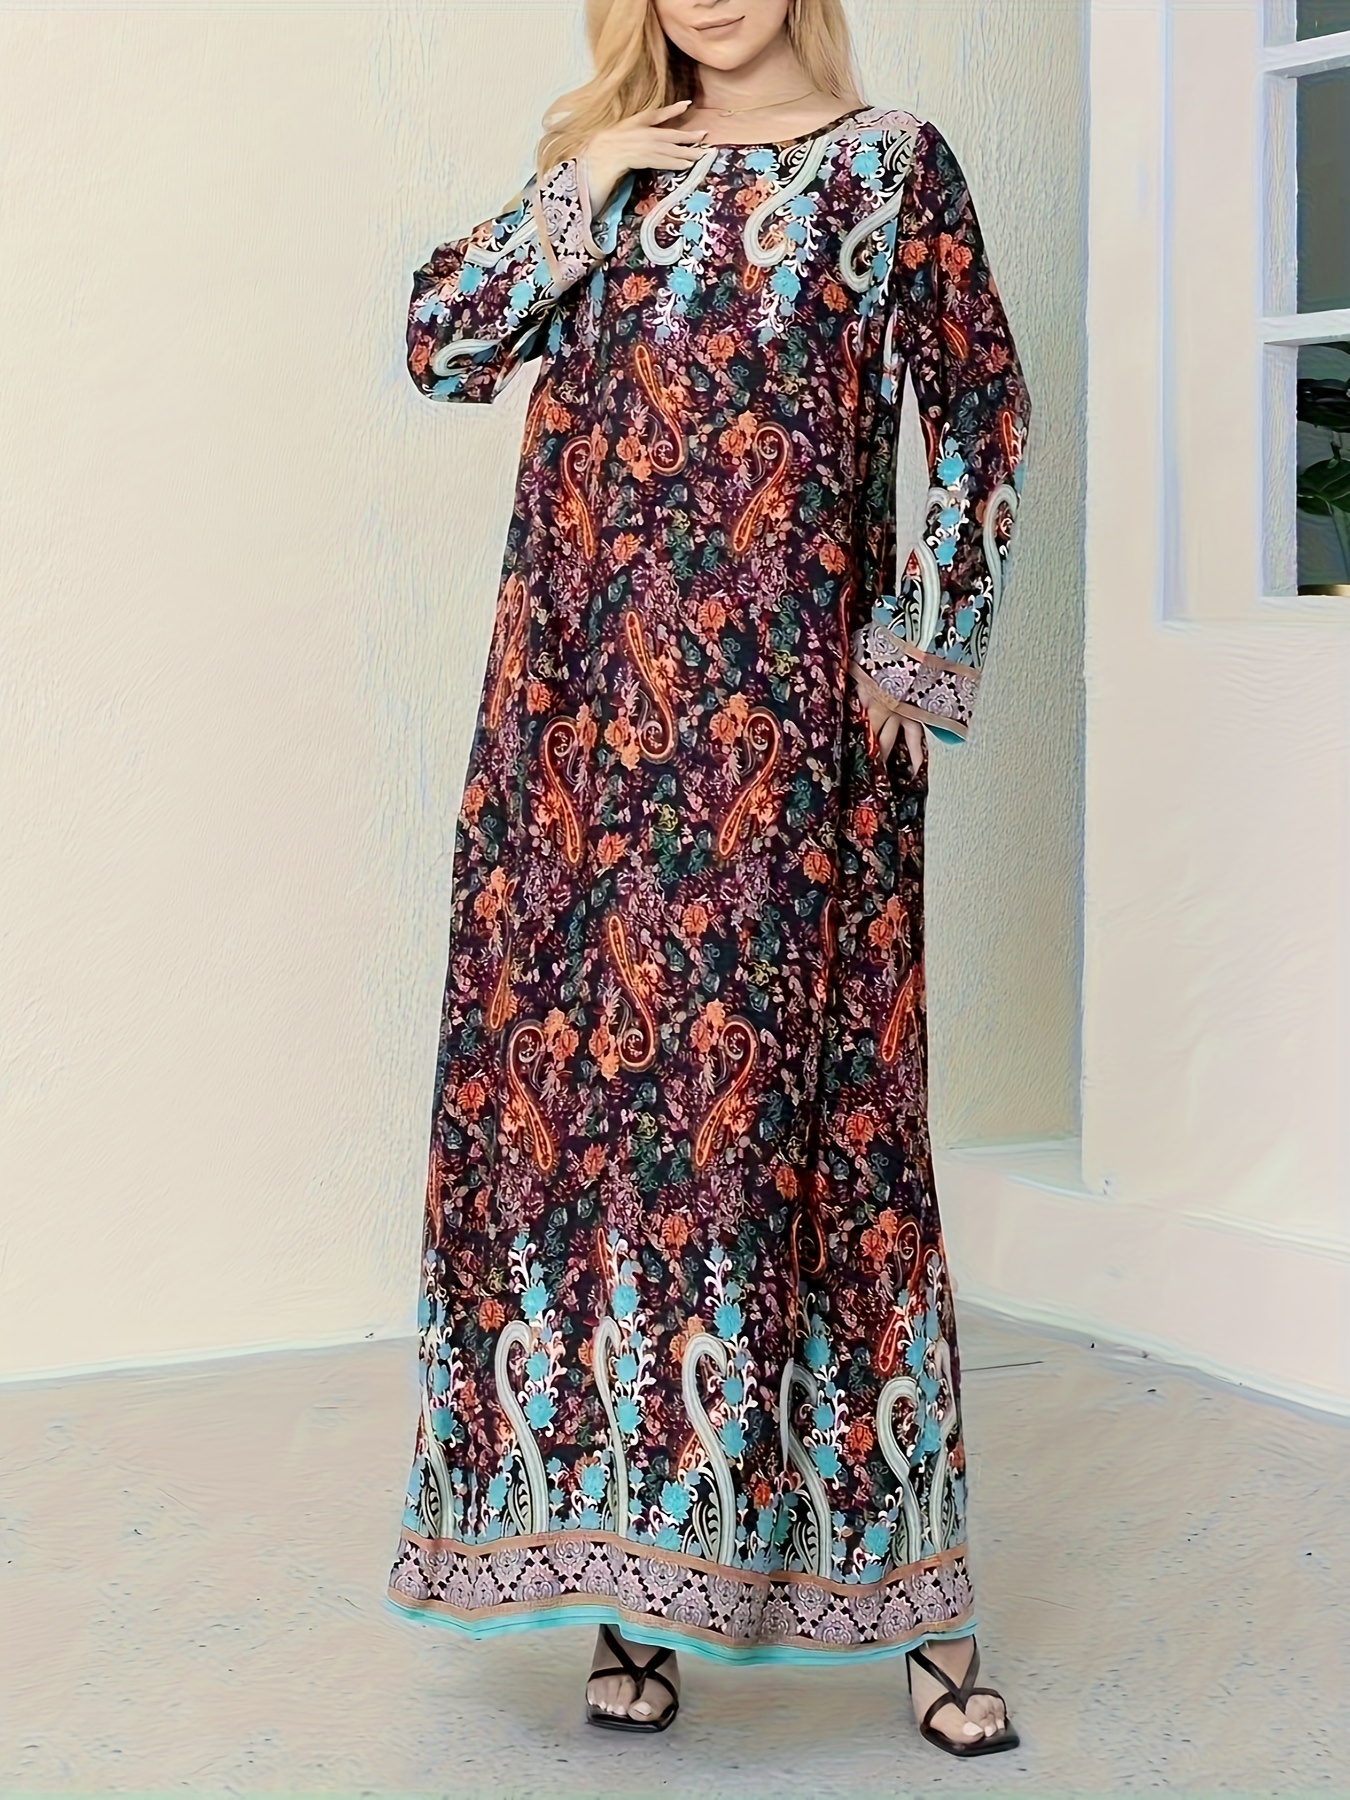 Φόρεμα Με Τσέπες Και Boho Λουλουδάτο Σχέδιο, Μακρυμάνικο Μάξι Φόρεμα Με Στρογγυλή Λαιμόκοψη Για Διακοπές, Γυναικεία Ρούχα